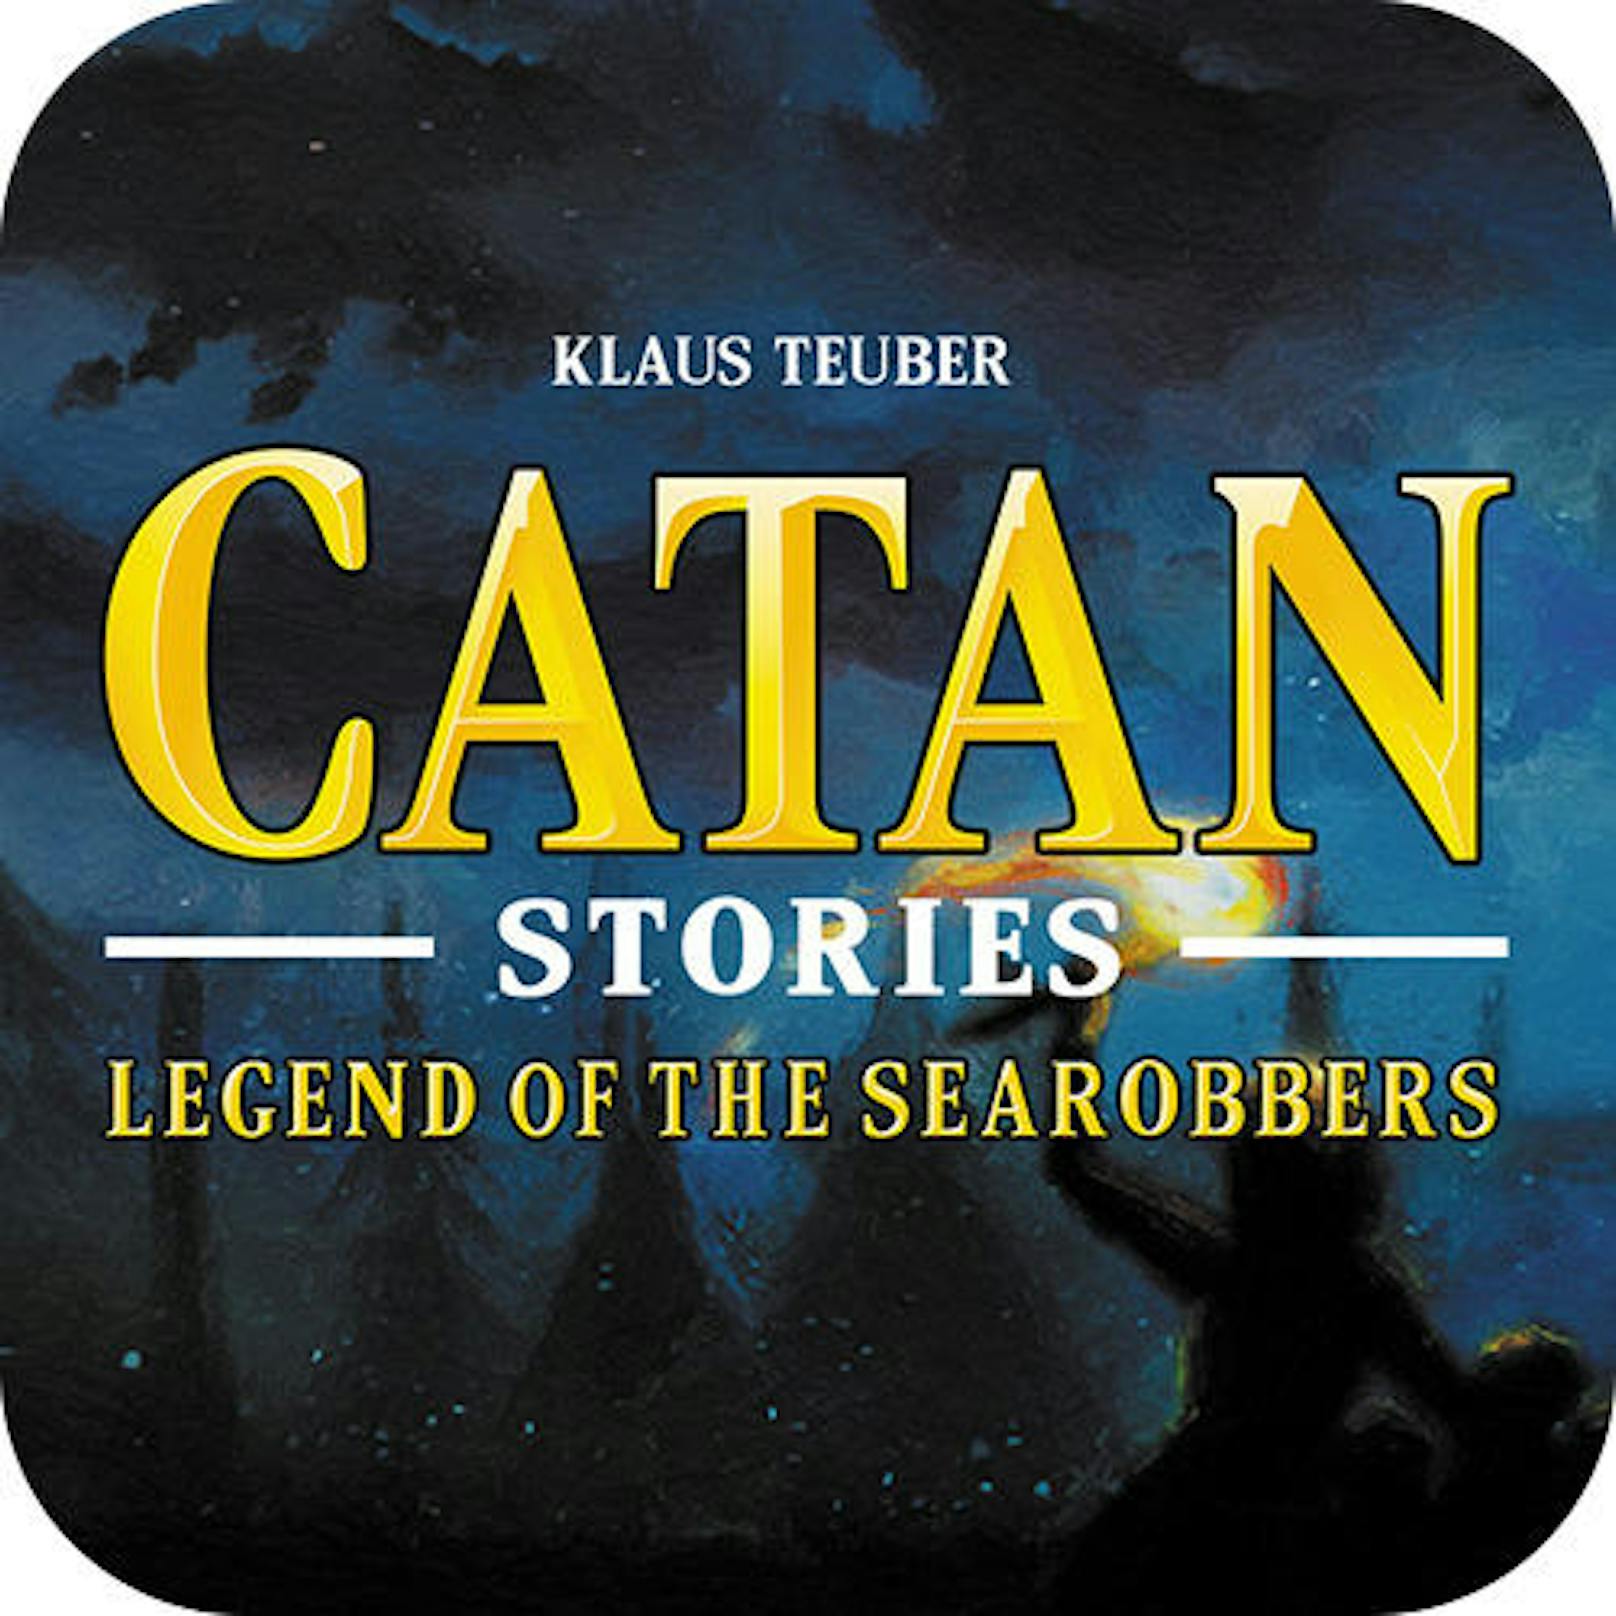 Catan Stories (Catan Studios) - iOS und Android - erscheint im vierten Quartal 2017. Catan Stories ist ein brandneues Text-Adventure, das auf dem weltweit beliebten, preisgekrönten Catan-Brettspiel basiert.